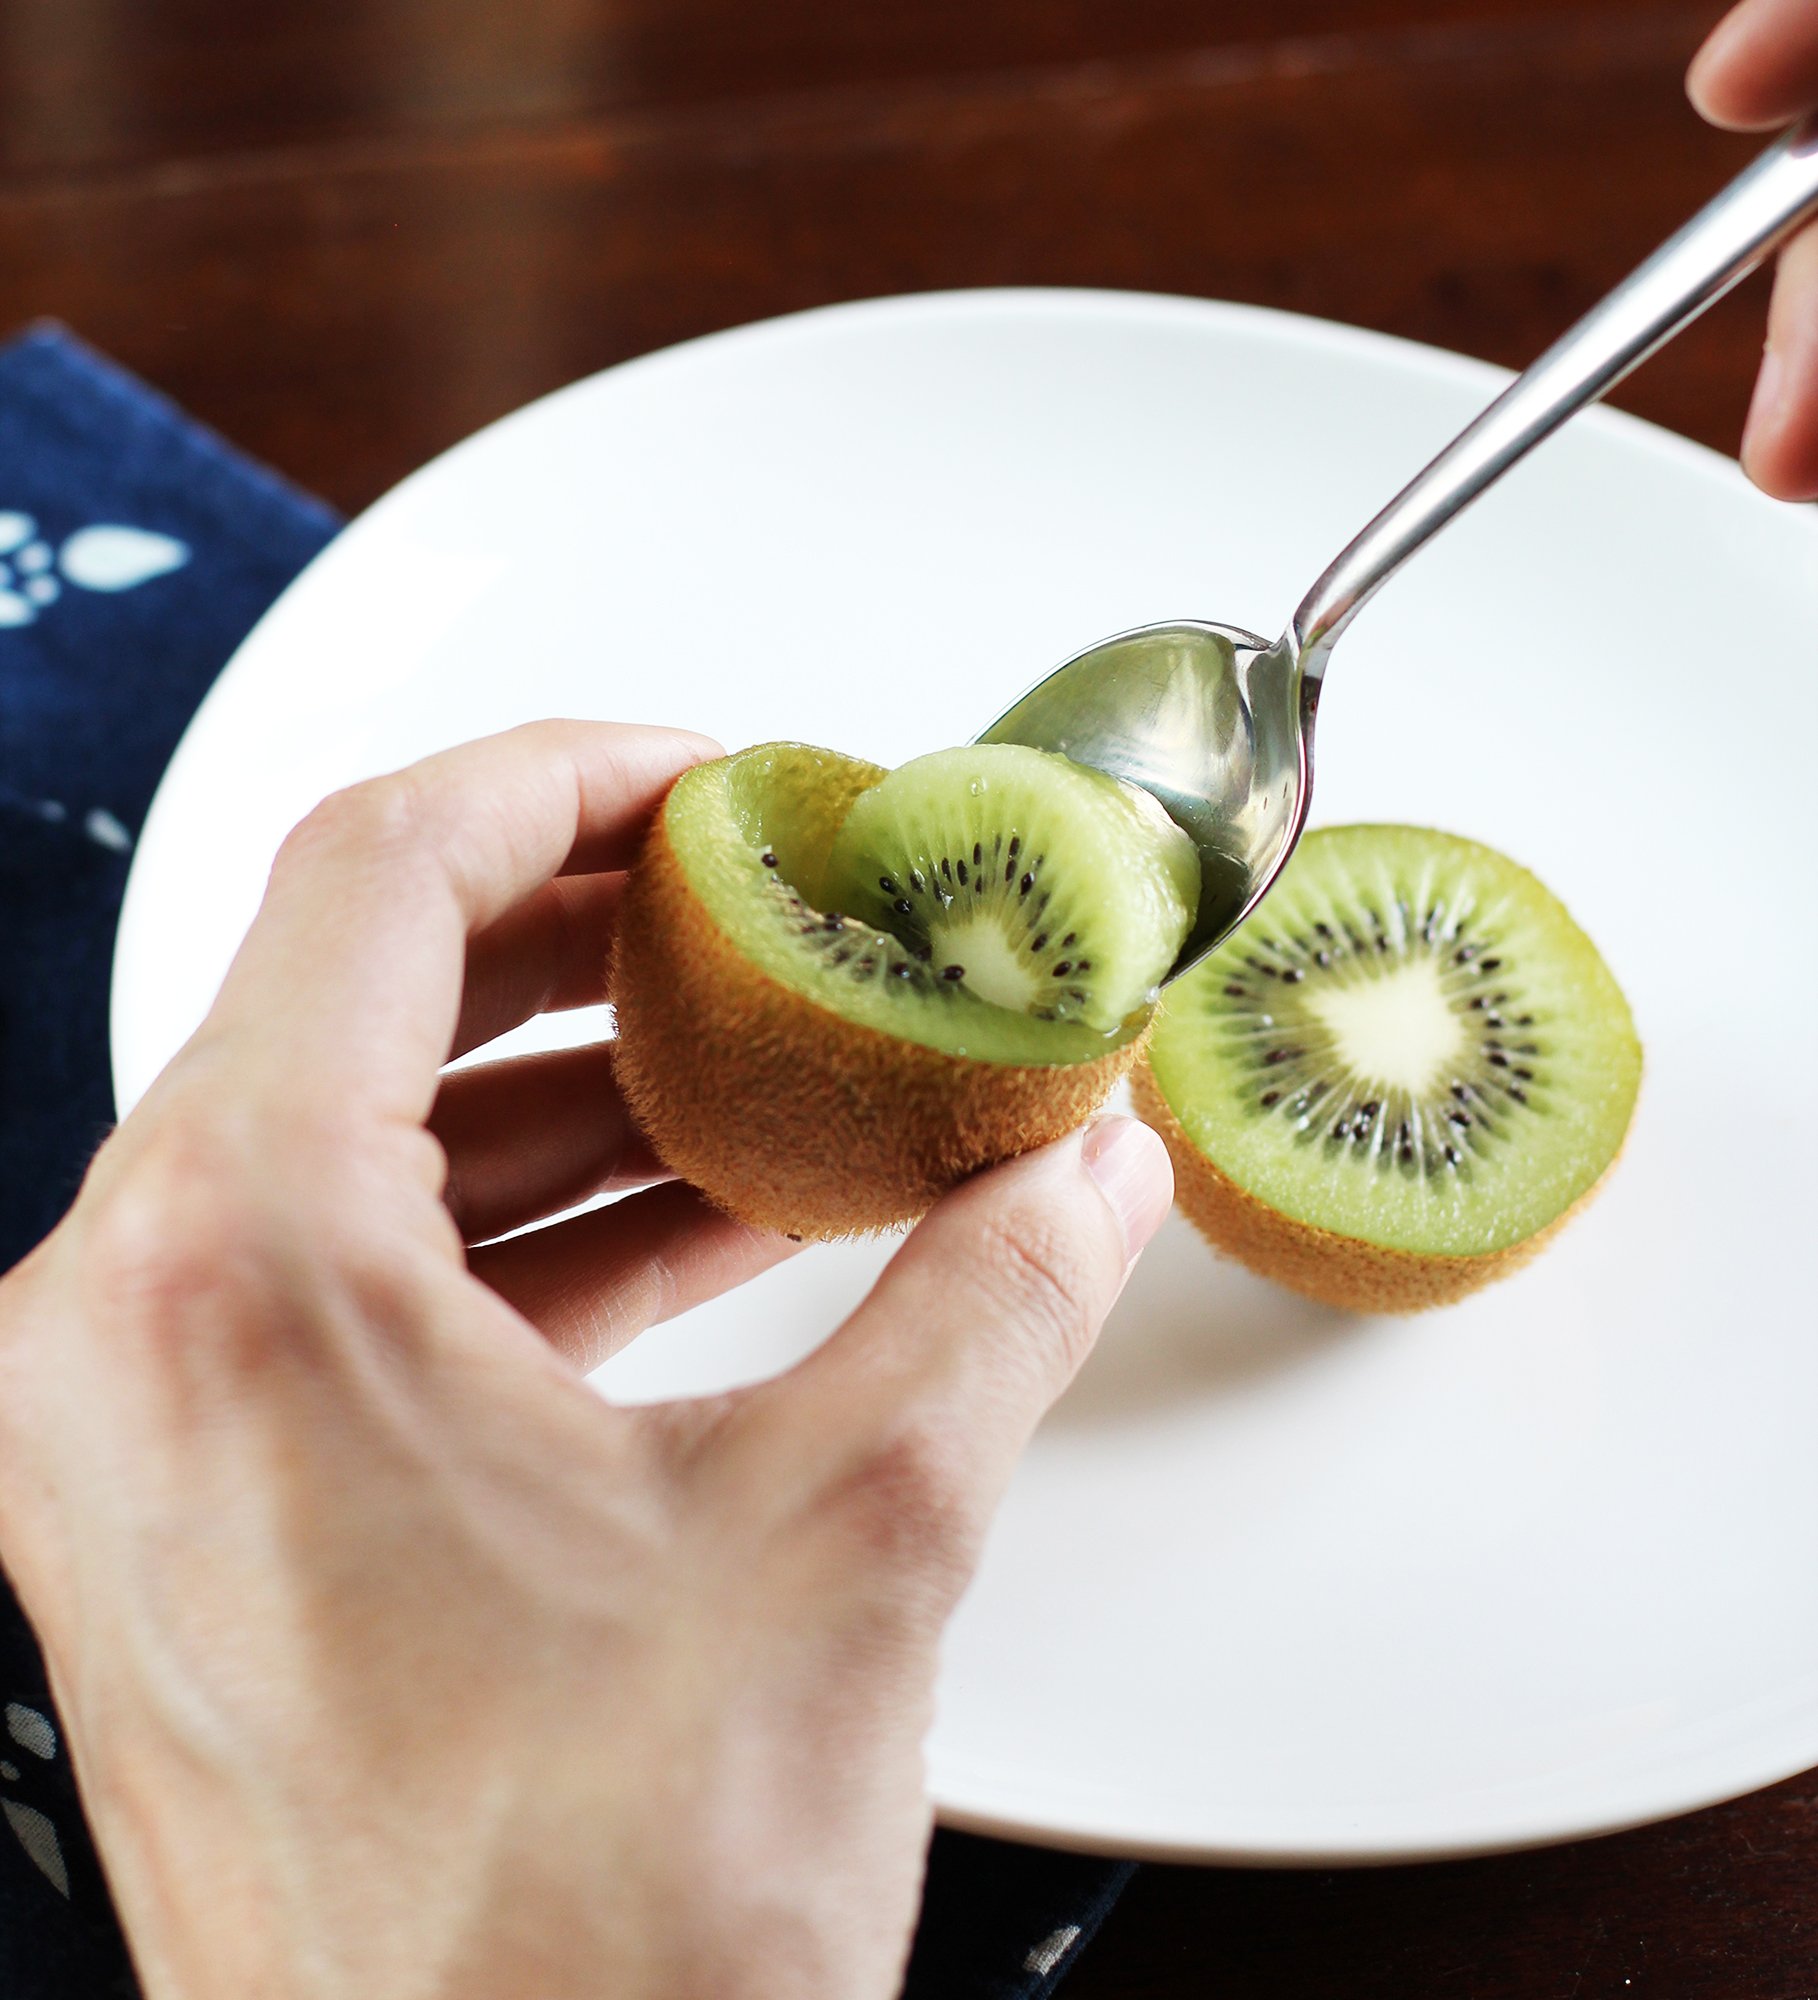 Đâu chỉ mỗi chuối, có 3 loại trái cây khác cũng giúp nhuận tràng cơ thể, phòng ngừa táo bón hiệu quả - Ảnh 1.